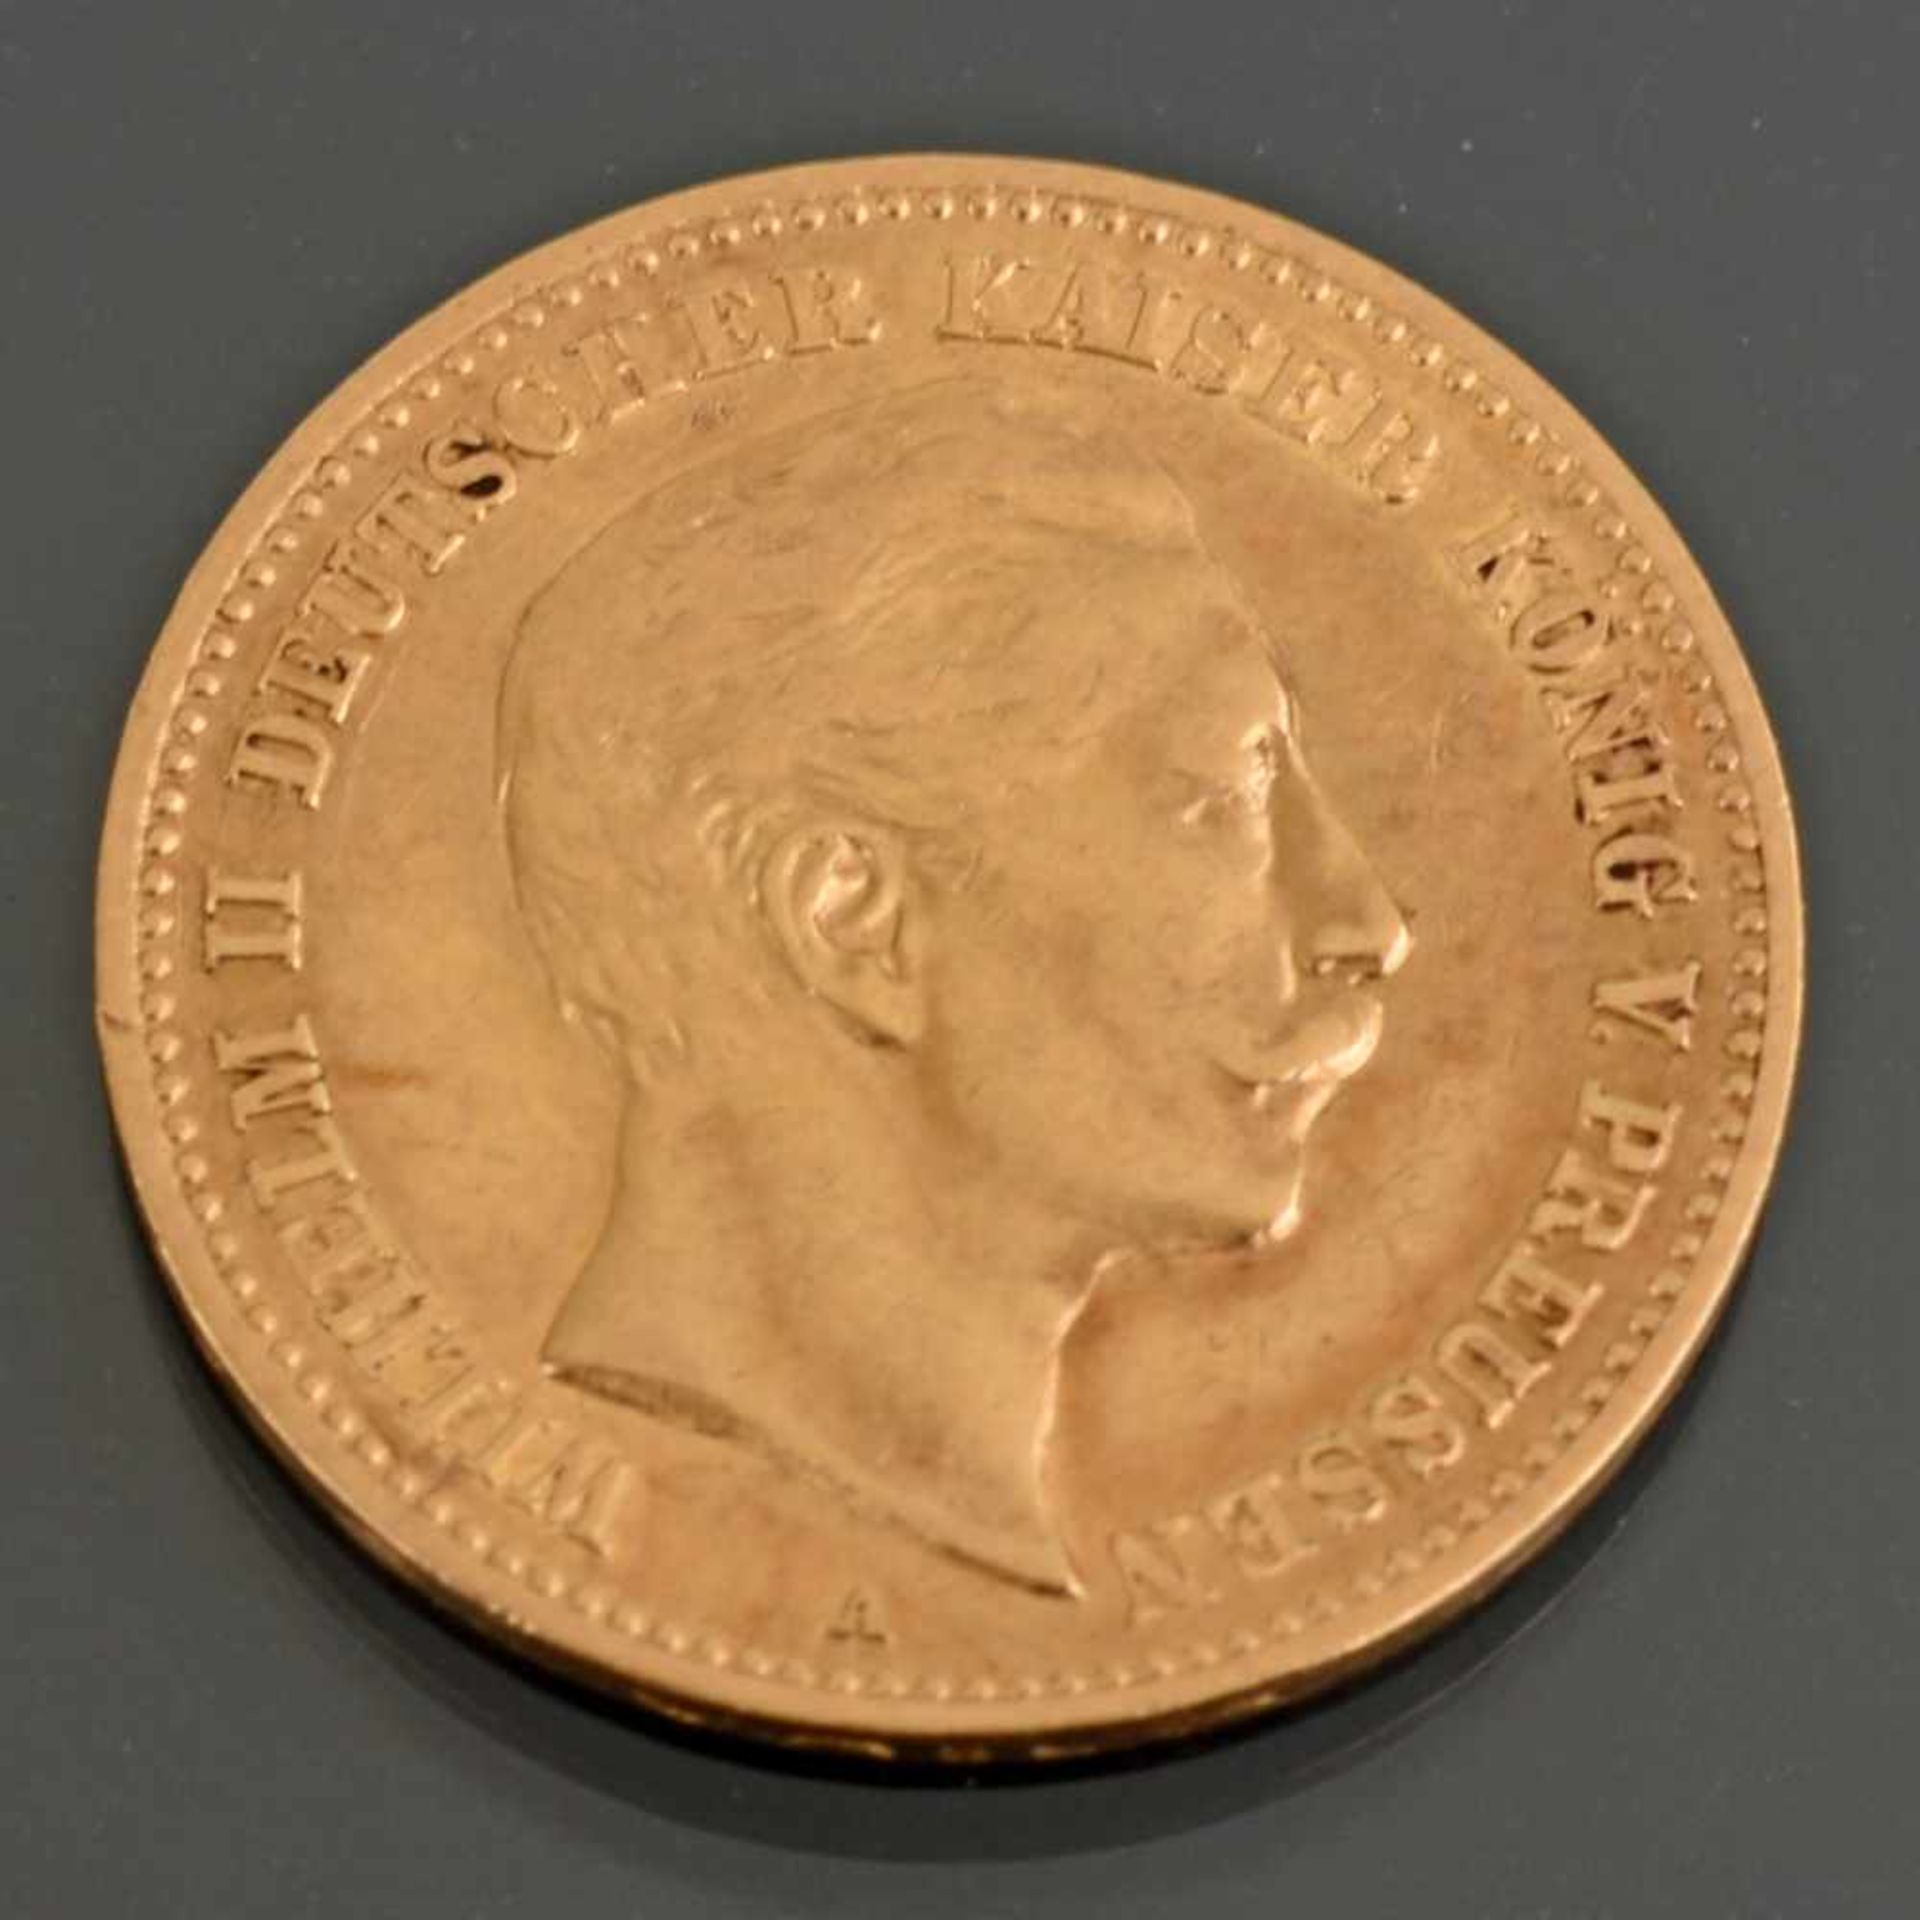 Goldmünze Kaiserreich - Preußen 1905 10 Mark in Gold, 900/1000, 3,98 g, D ca. 19,5 mm, av. Wilhelm - Bild 2 aus 3